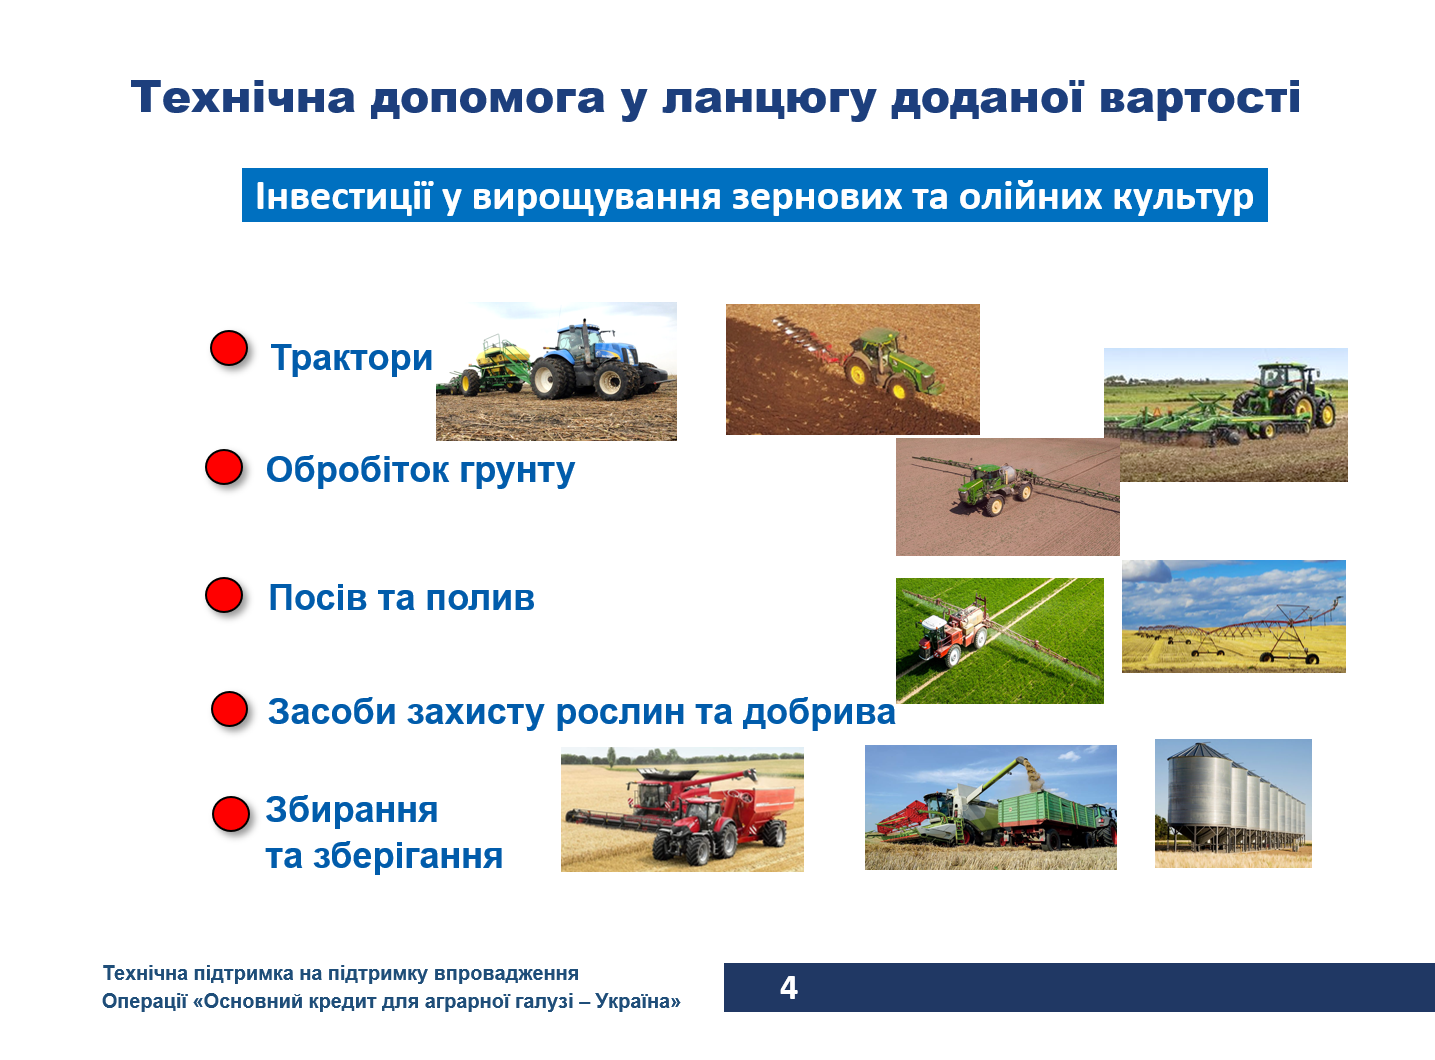 Додатково проект ЕІБ  “Основний кредит для аграрної галузі - Україна” 4